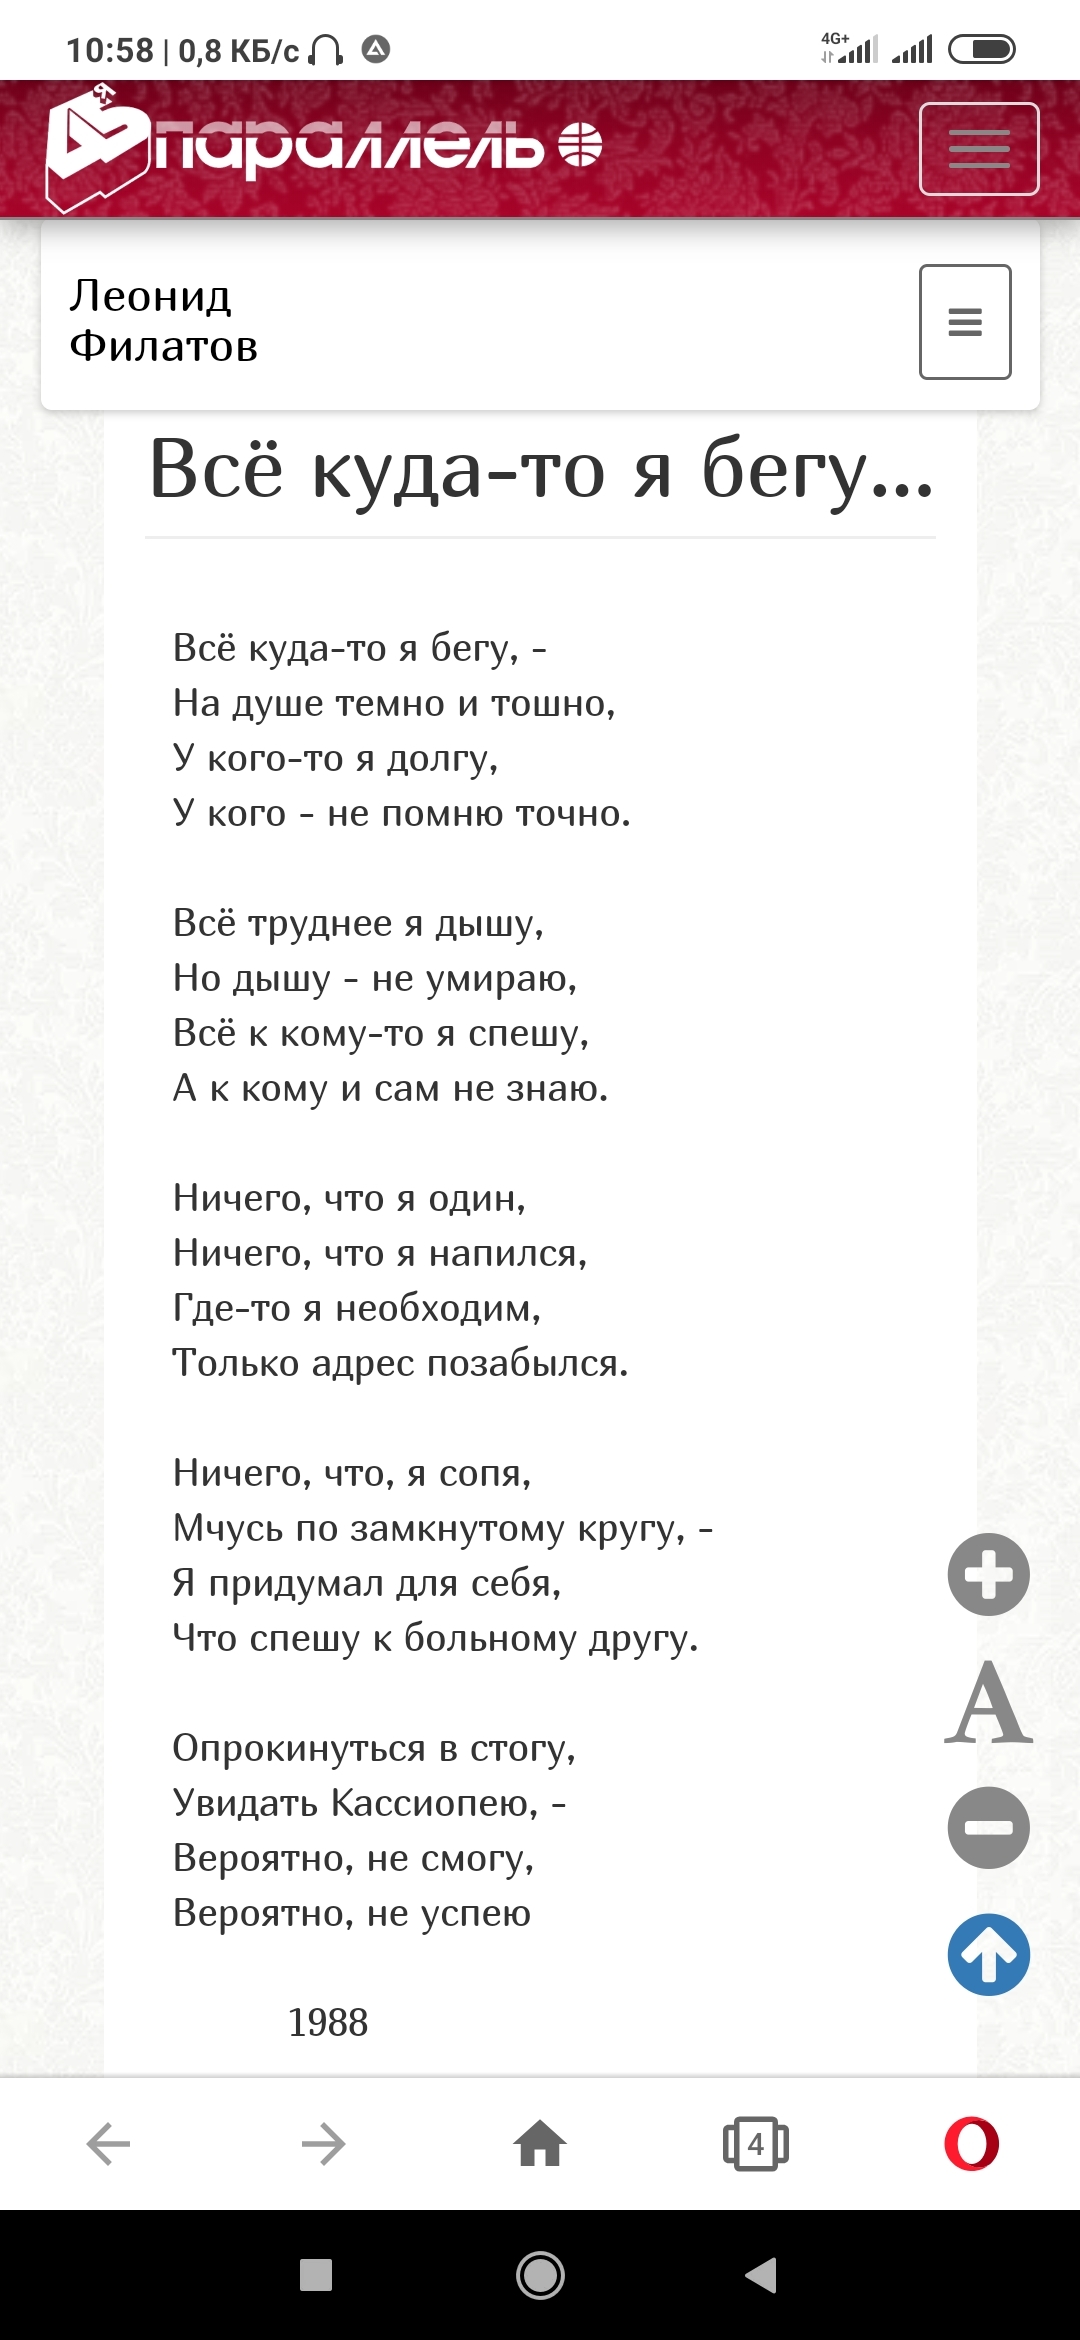 By mood. Leonid Filatov. (I read it in 1988.) - Poetry, Leonid Filatov, Longpost